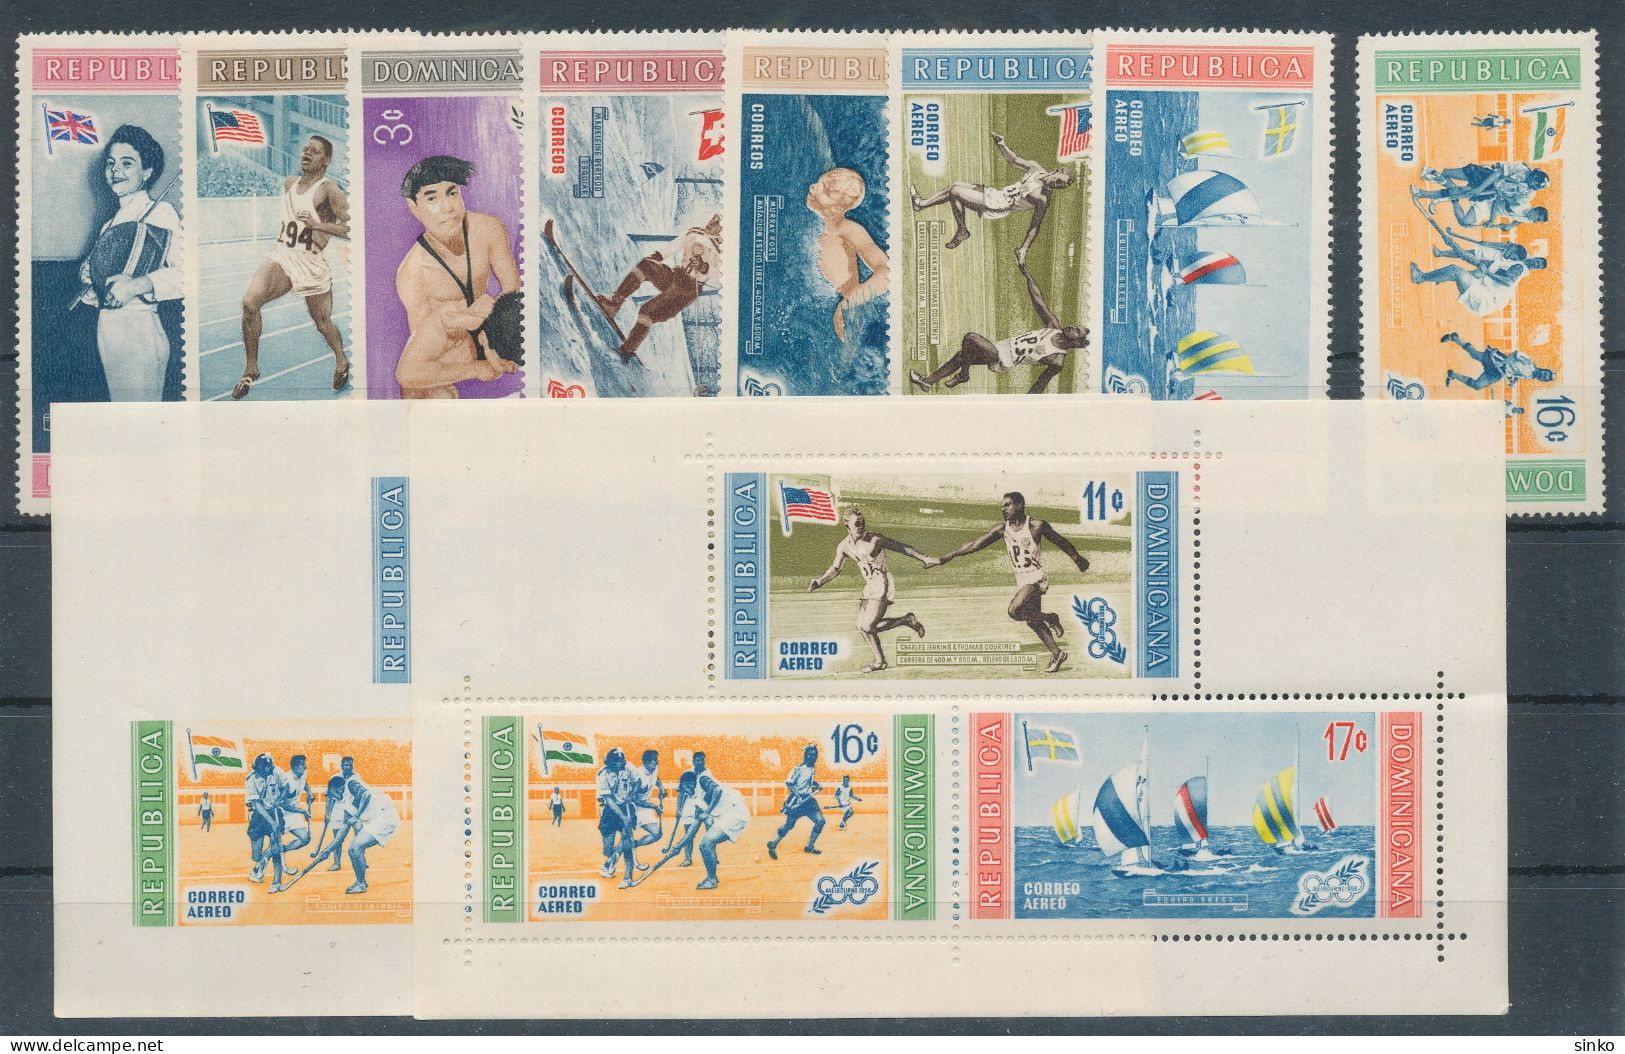 1958. Dominican Republic - Olympics - Verano 1956: Melbourne